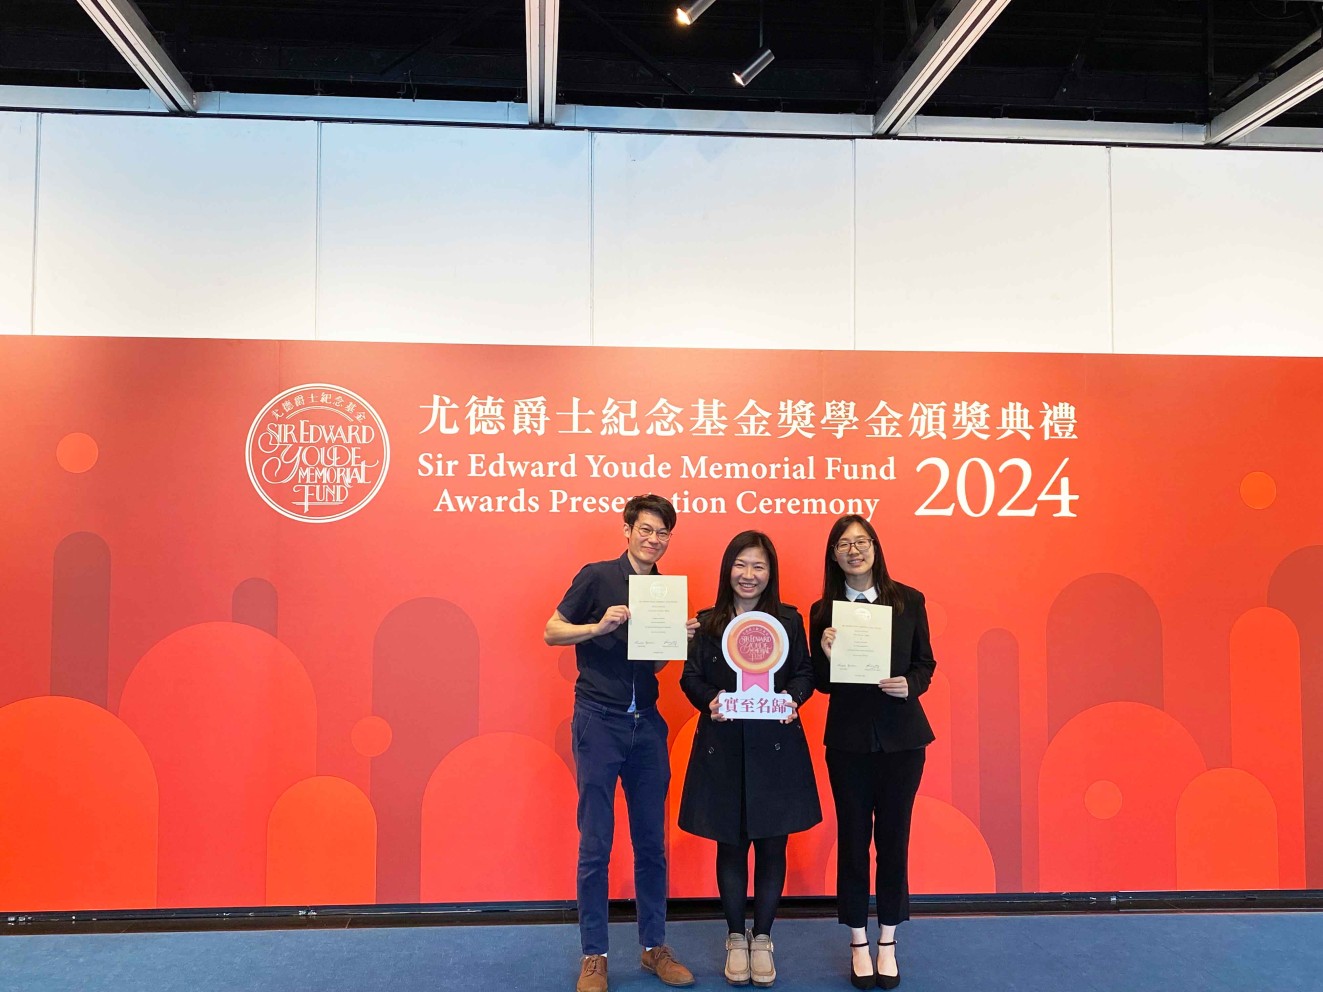 两位岭大得奖同学与学生事务副总监王丽珠女士（中），一同出席了于3月24日在香港大会堂举行的尤德爵士纪念基金第37届奖学金颁奖典礼。